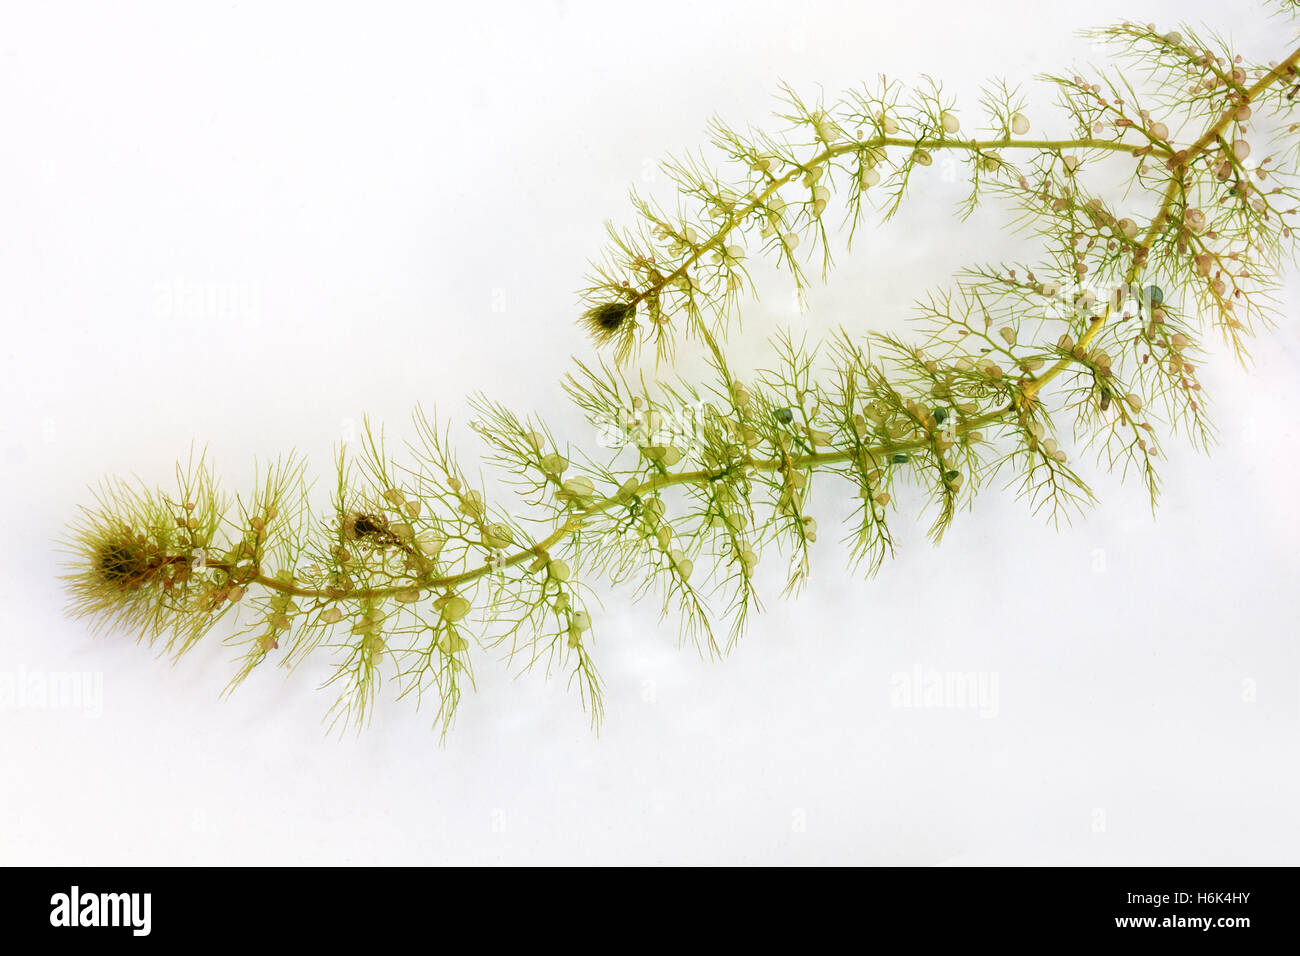 Utricularia australis is a medium-sized, perennial species of aquatic bladderwort. Stock Photo